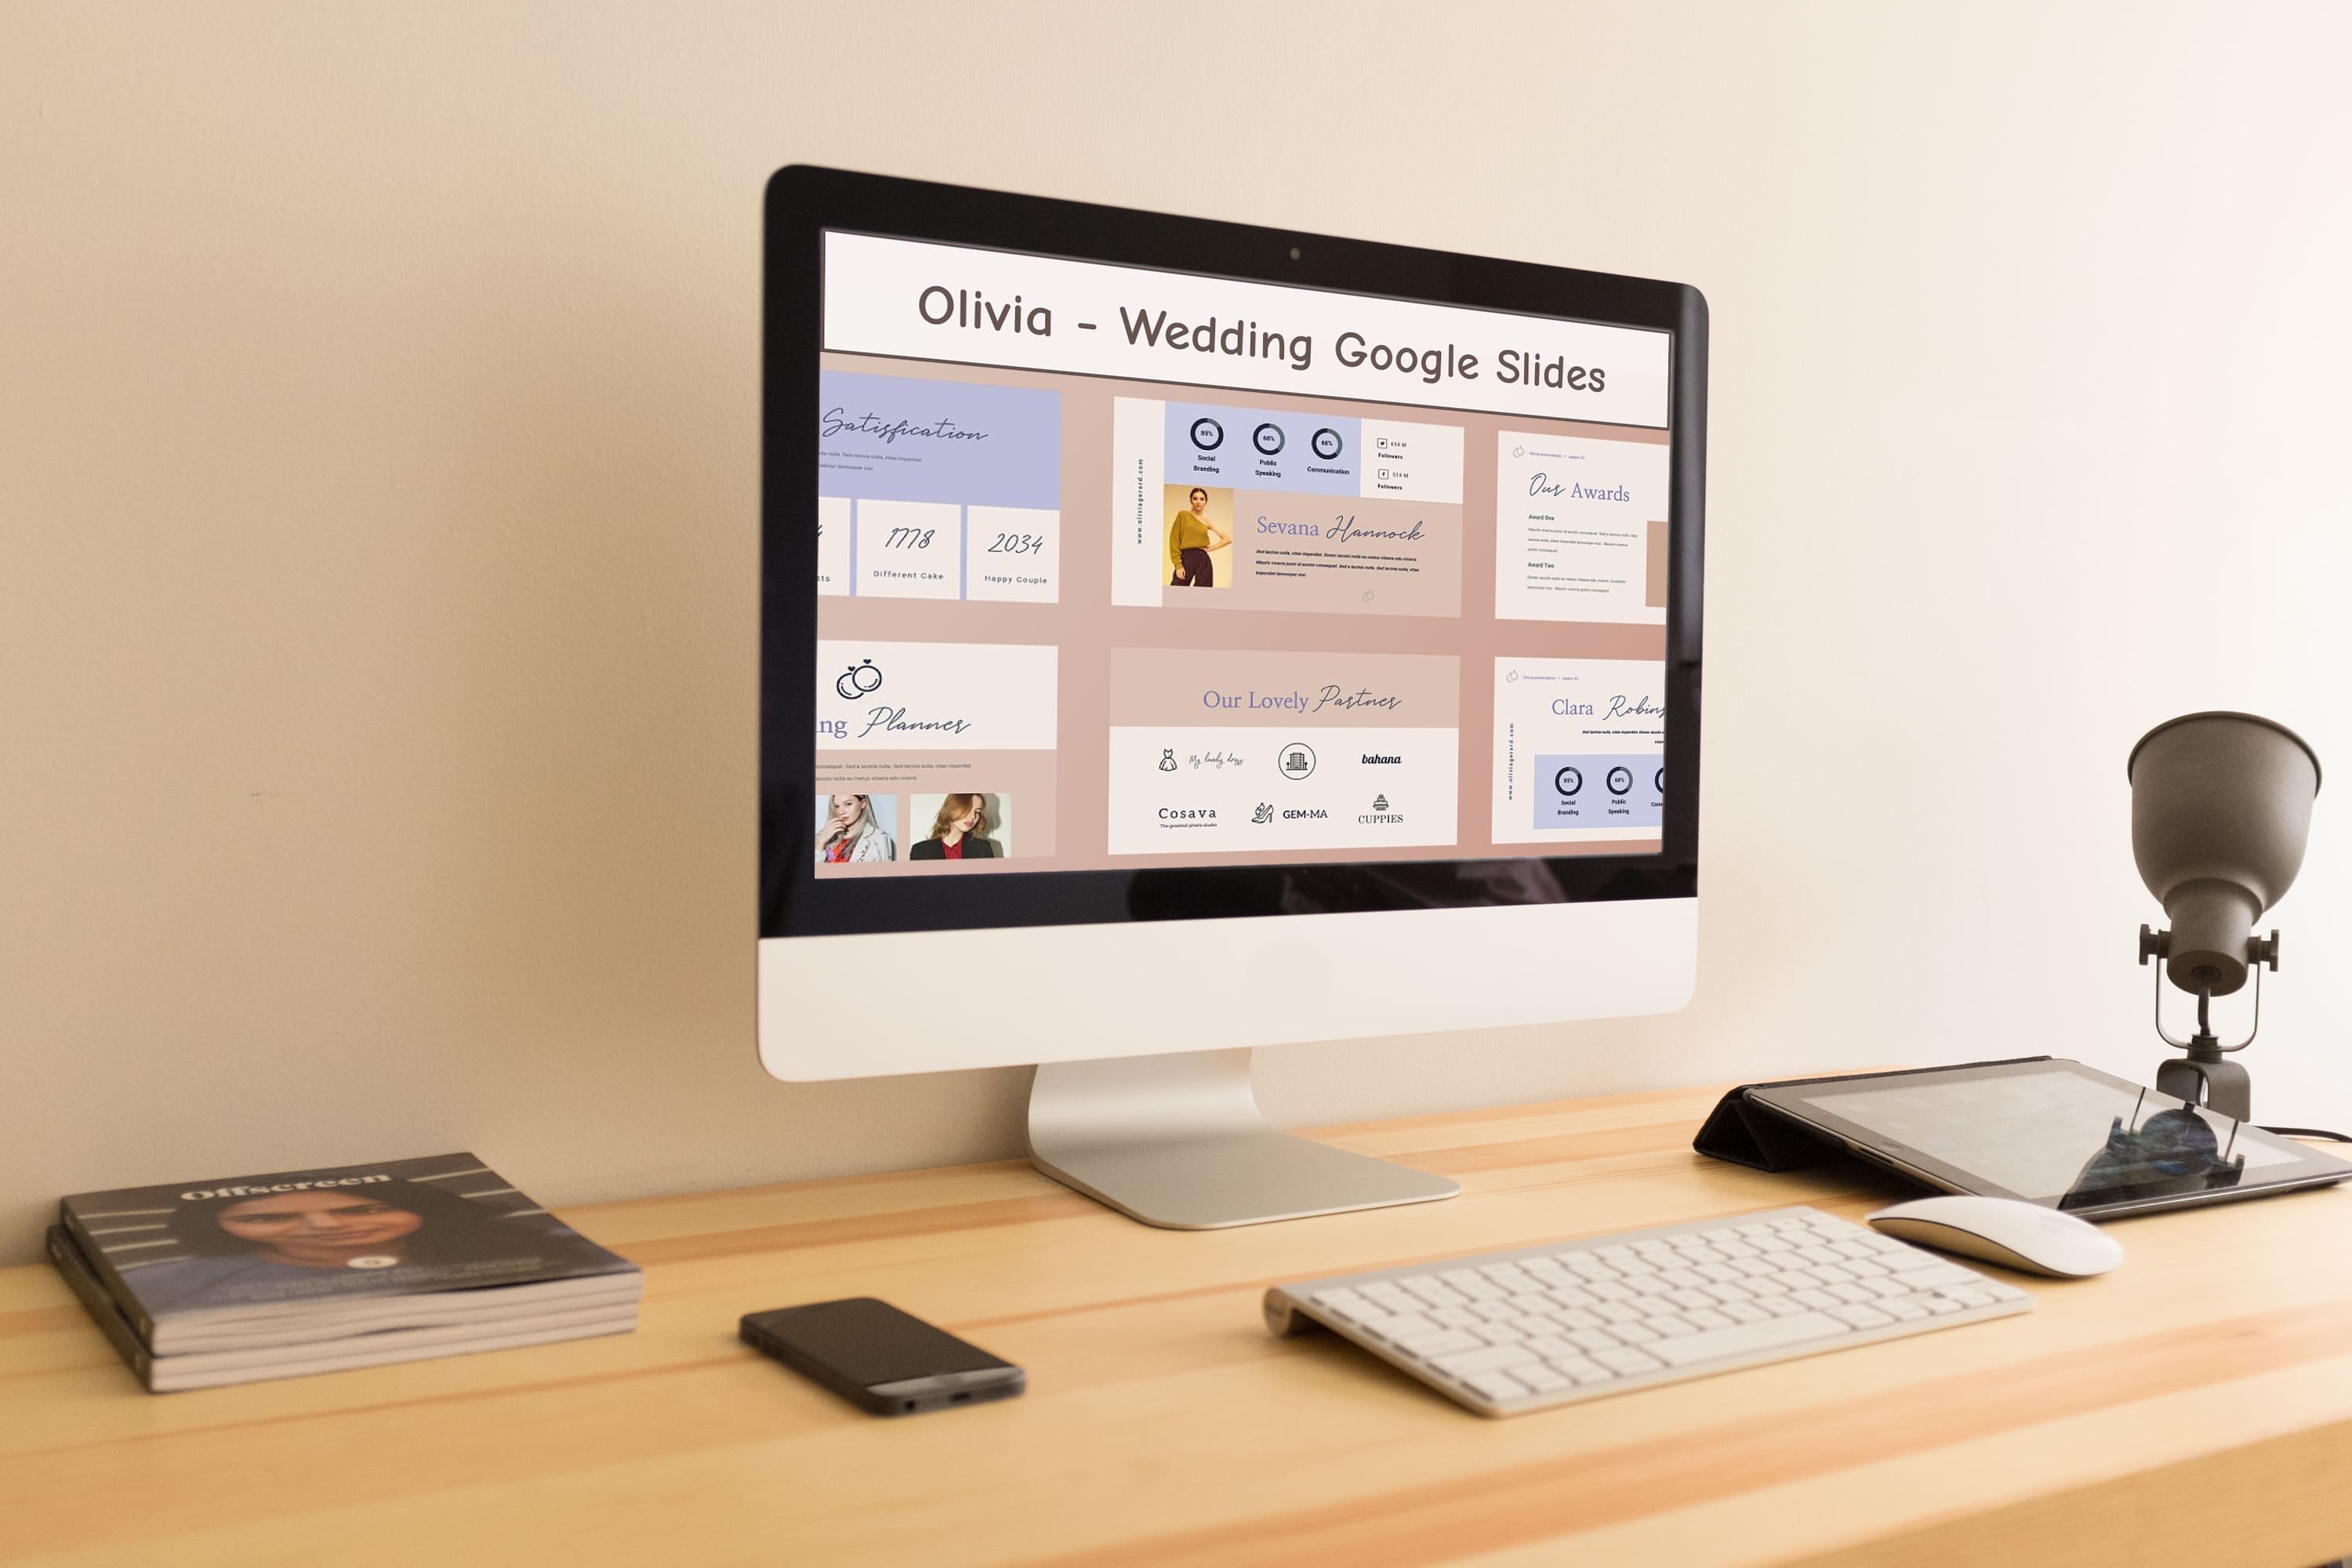 Olivia - Wedding Google Slides - desktop.